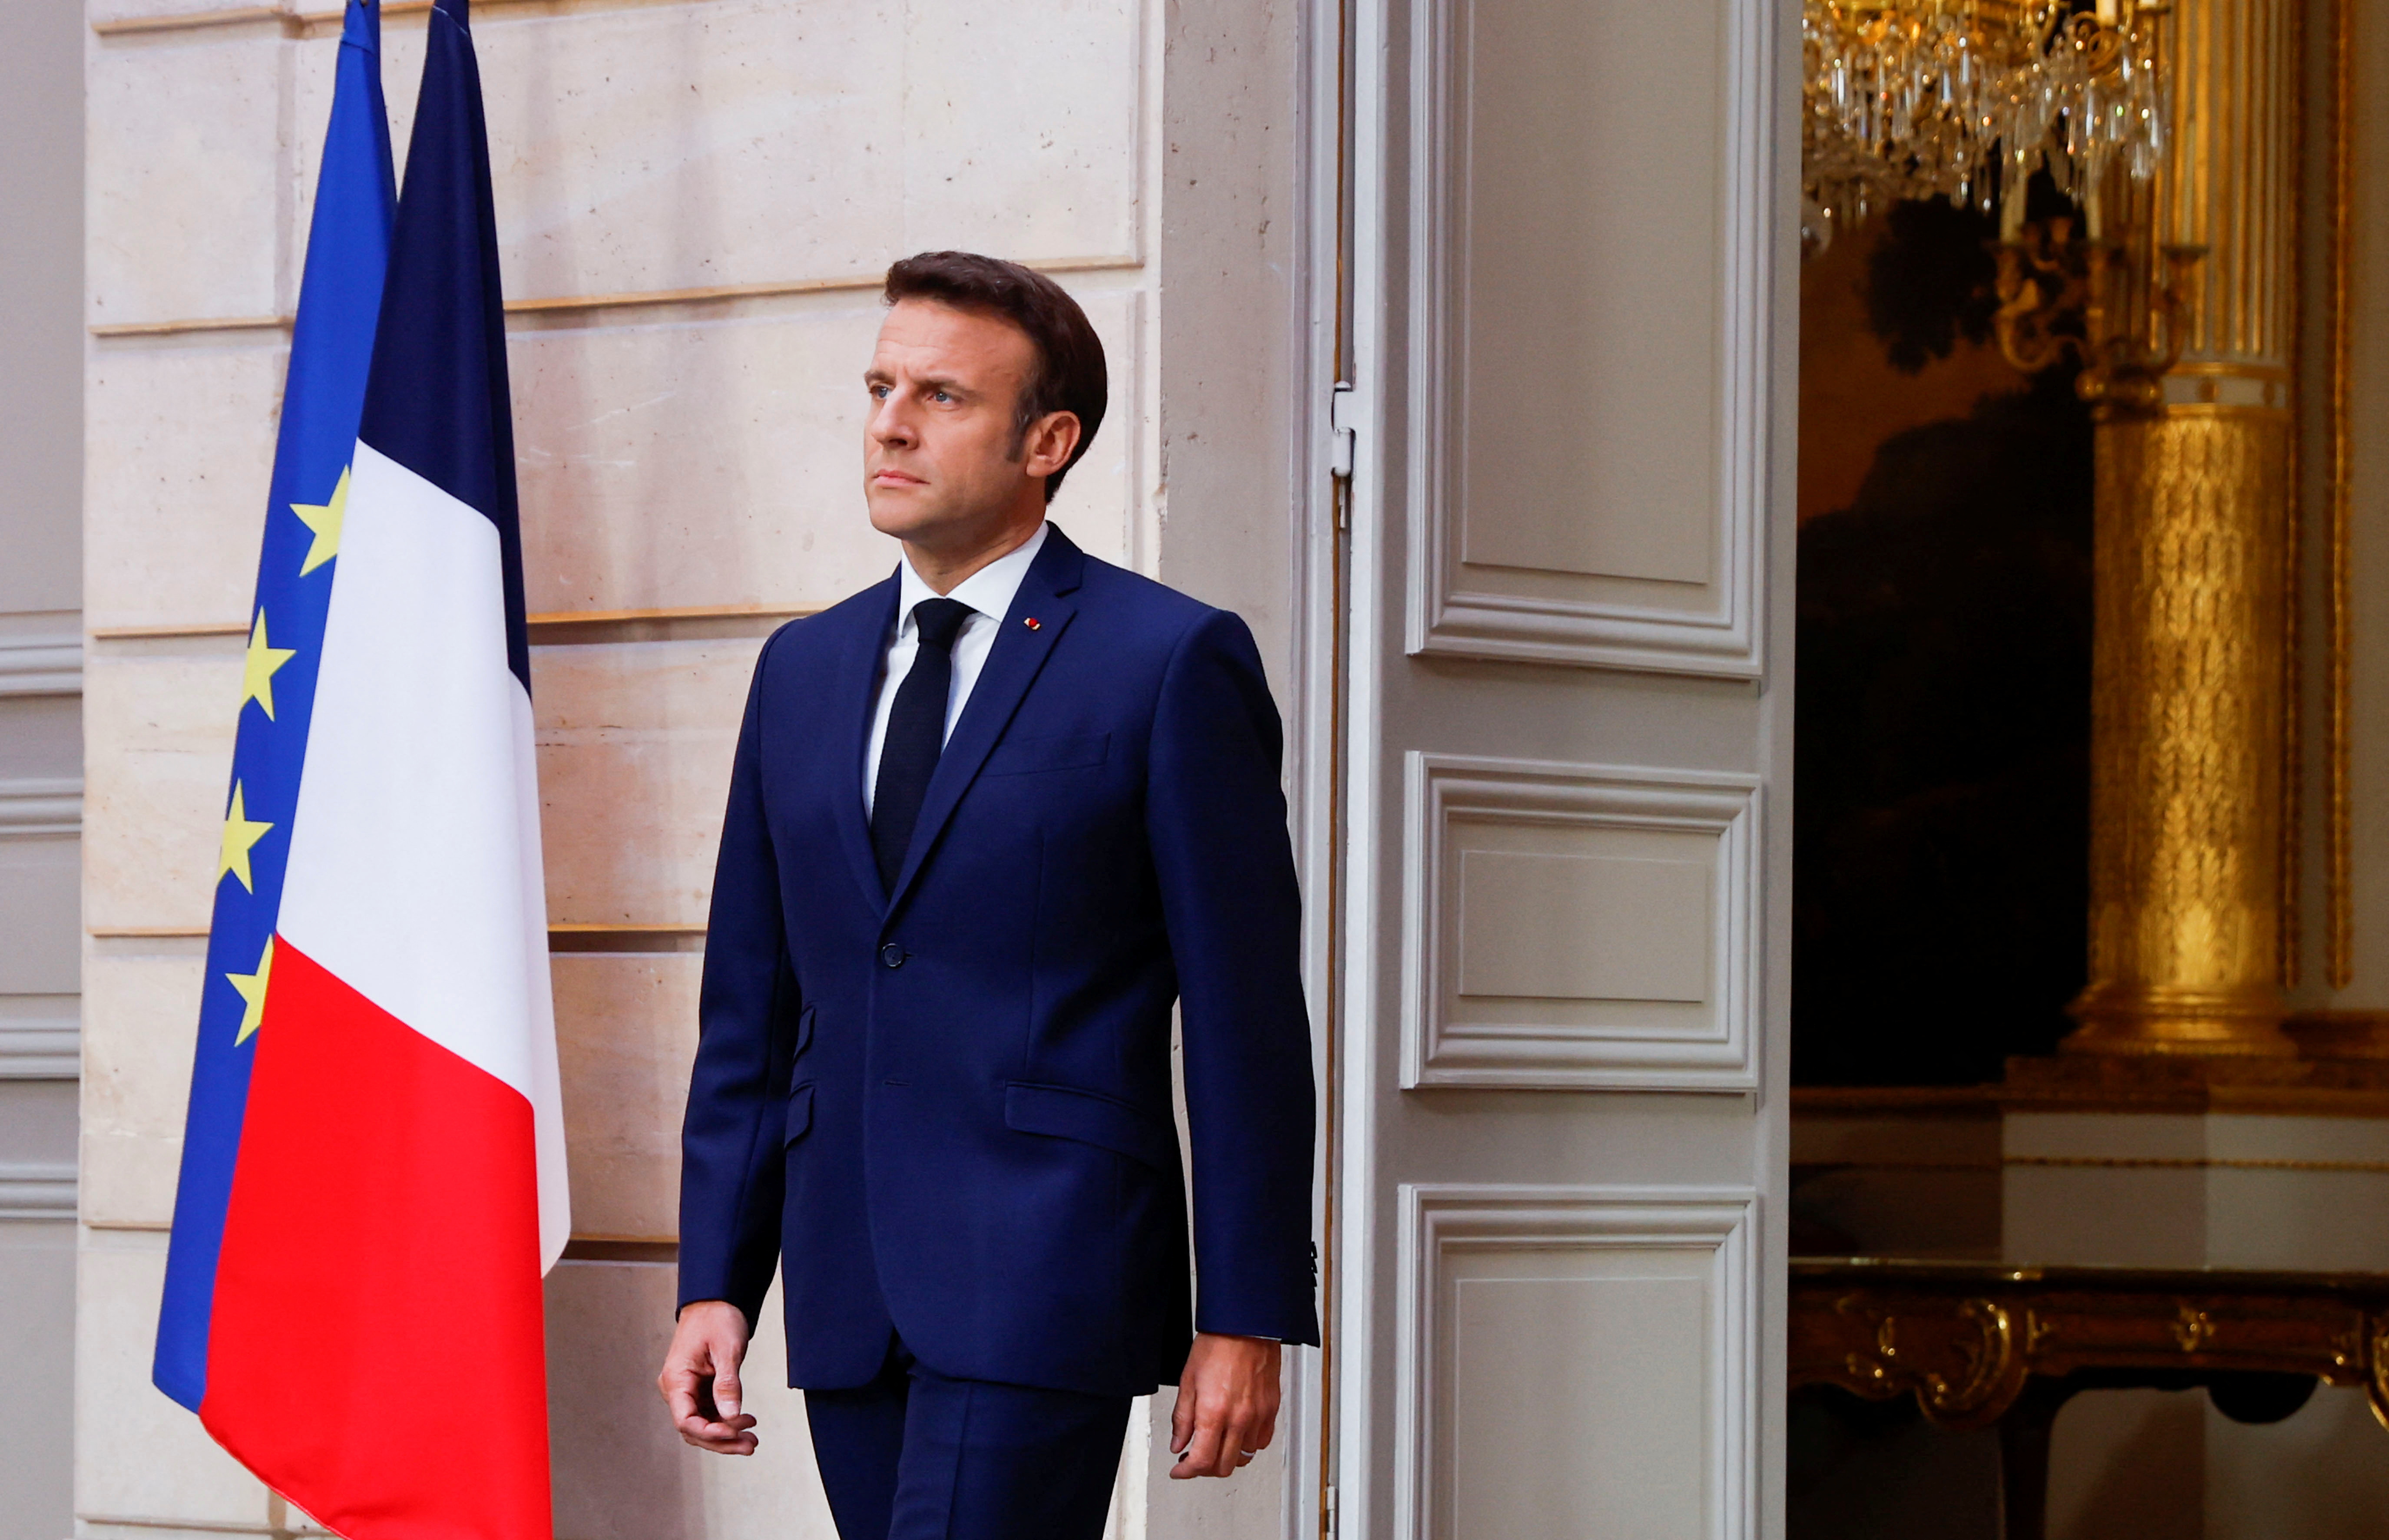 El presidente francés Emmanuel Macron llega mientras jura su segundo mandato como presidente tras su reelección, durante una ceremonia en el Palacio del Elíseo en París, Francia, el 7 de mayo de 2022. REUTERS/Gonzalo Fuentes/Pool